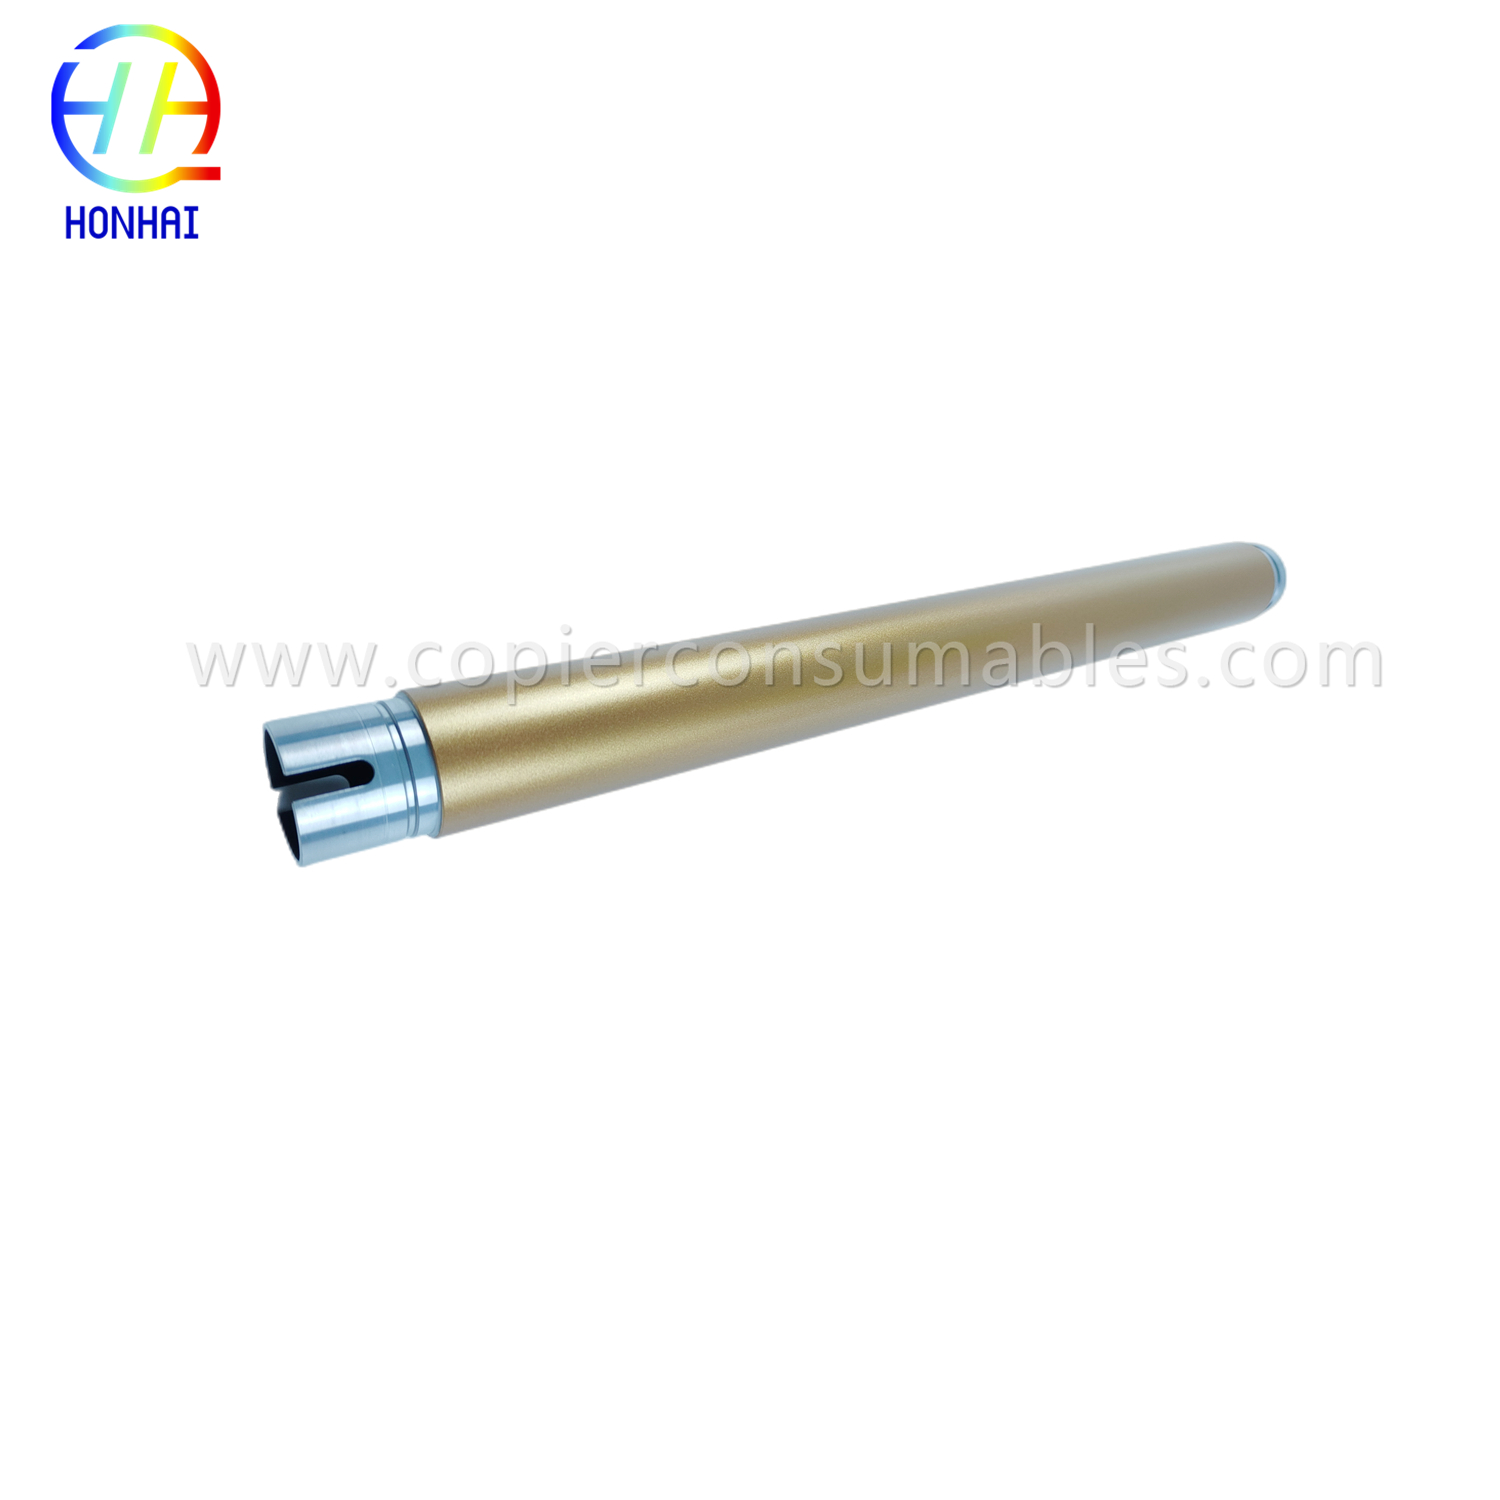 https://www.copierhonhaitech.com/upper-fuser-roller-for-xerox-versaling-b400-3610-3615-3655-heating-roller-01218a-product/